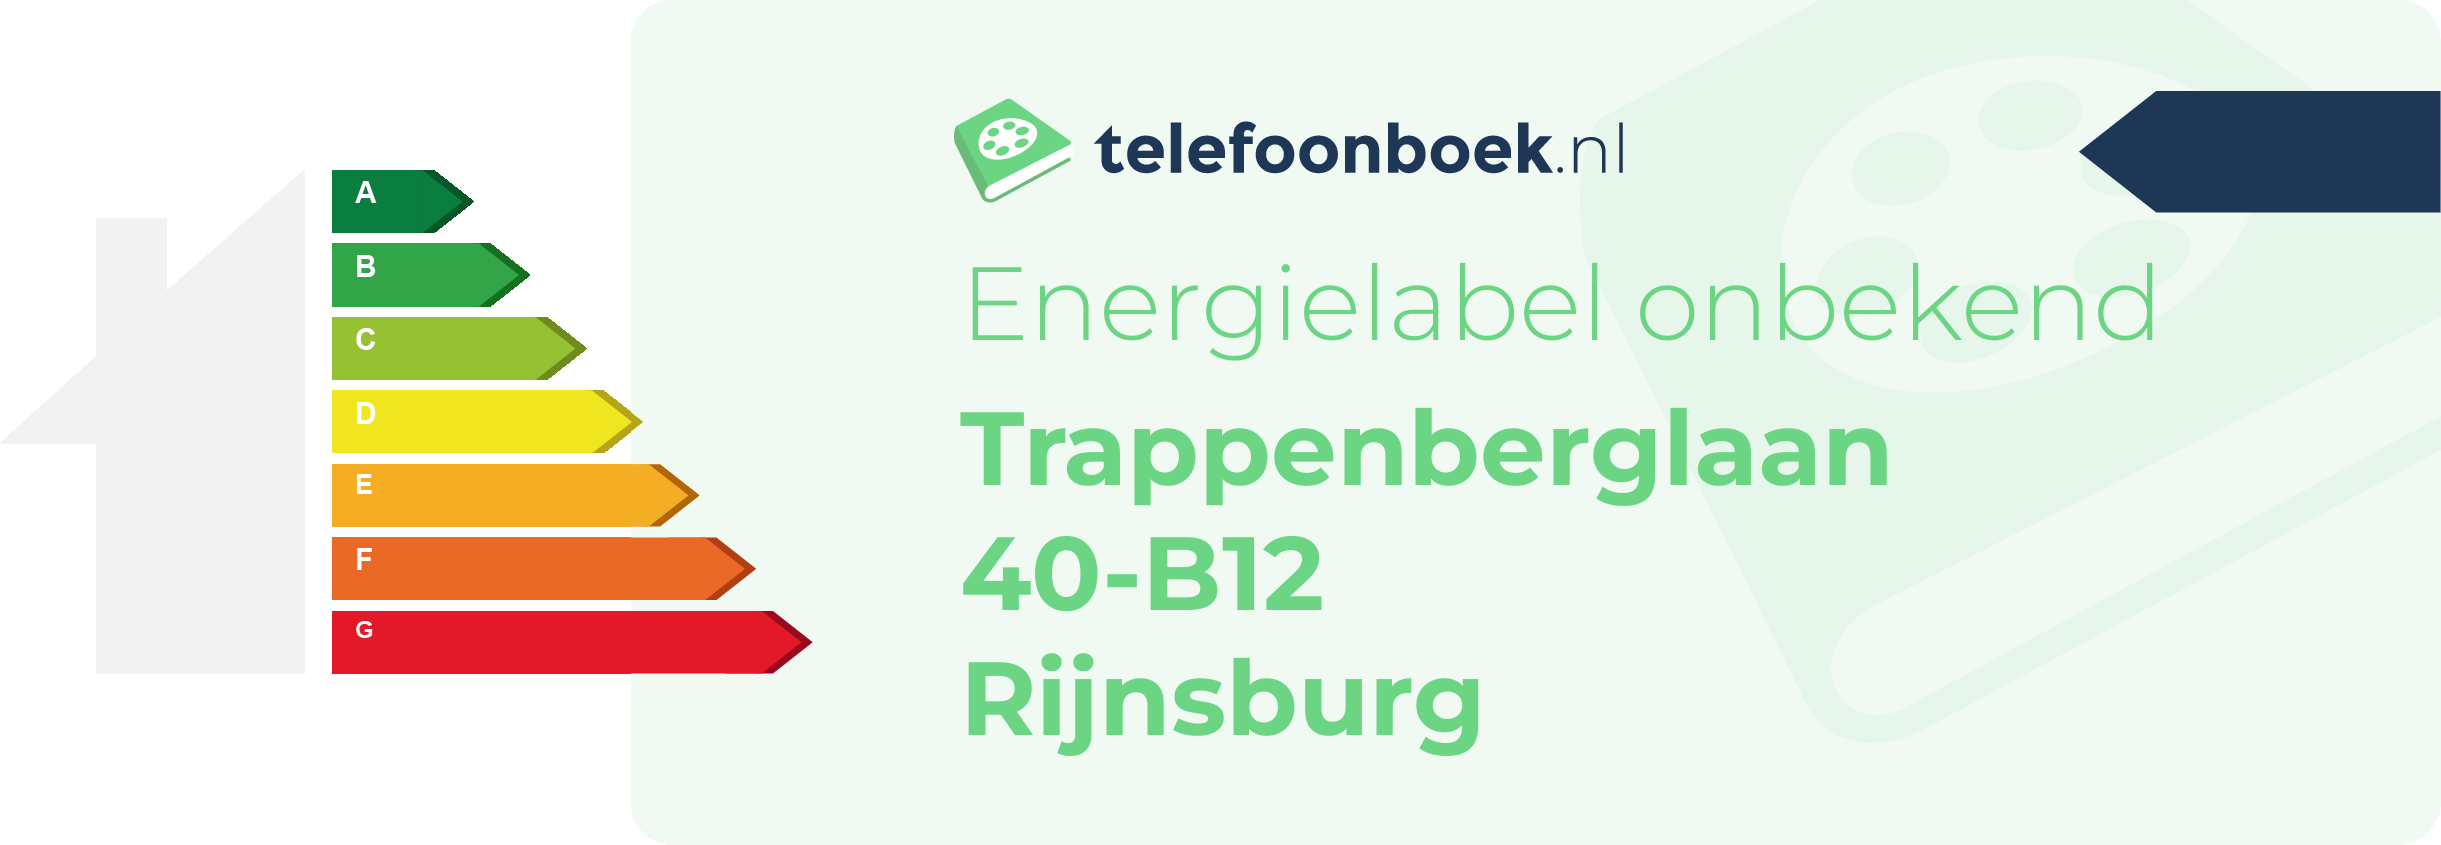 Energielabel Trappenberglaan 40-B12 Rijnsburg